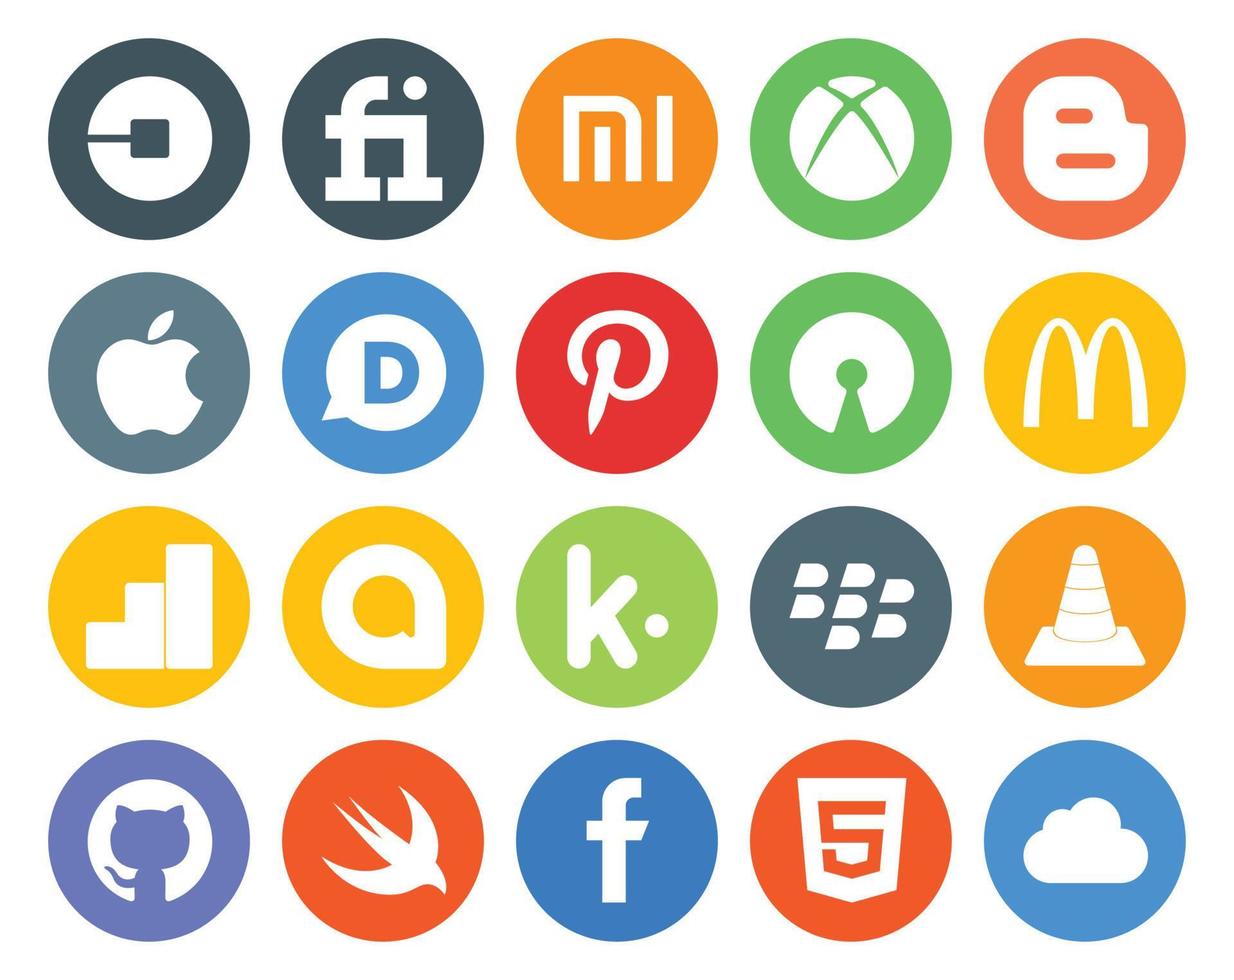 20 Symbolpakete für soziale Medien, einschließlich Media Blackberry Disqus Kik Google Analytics vektor